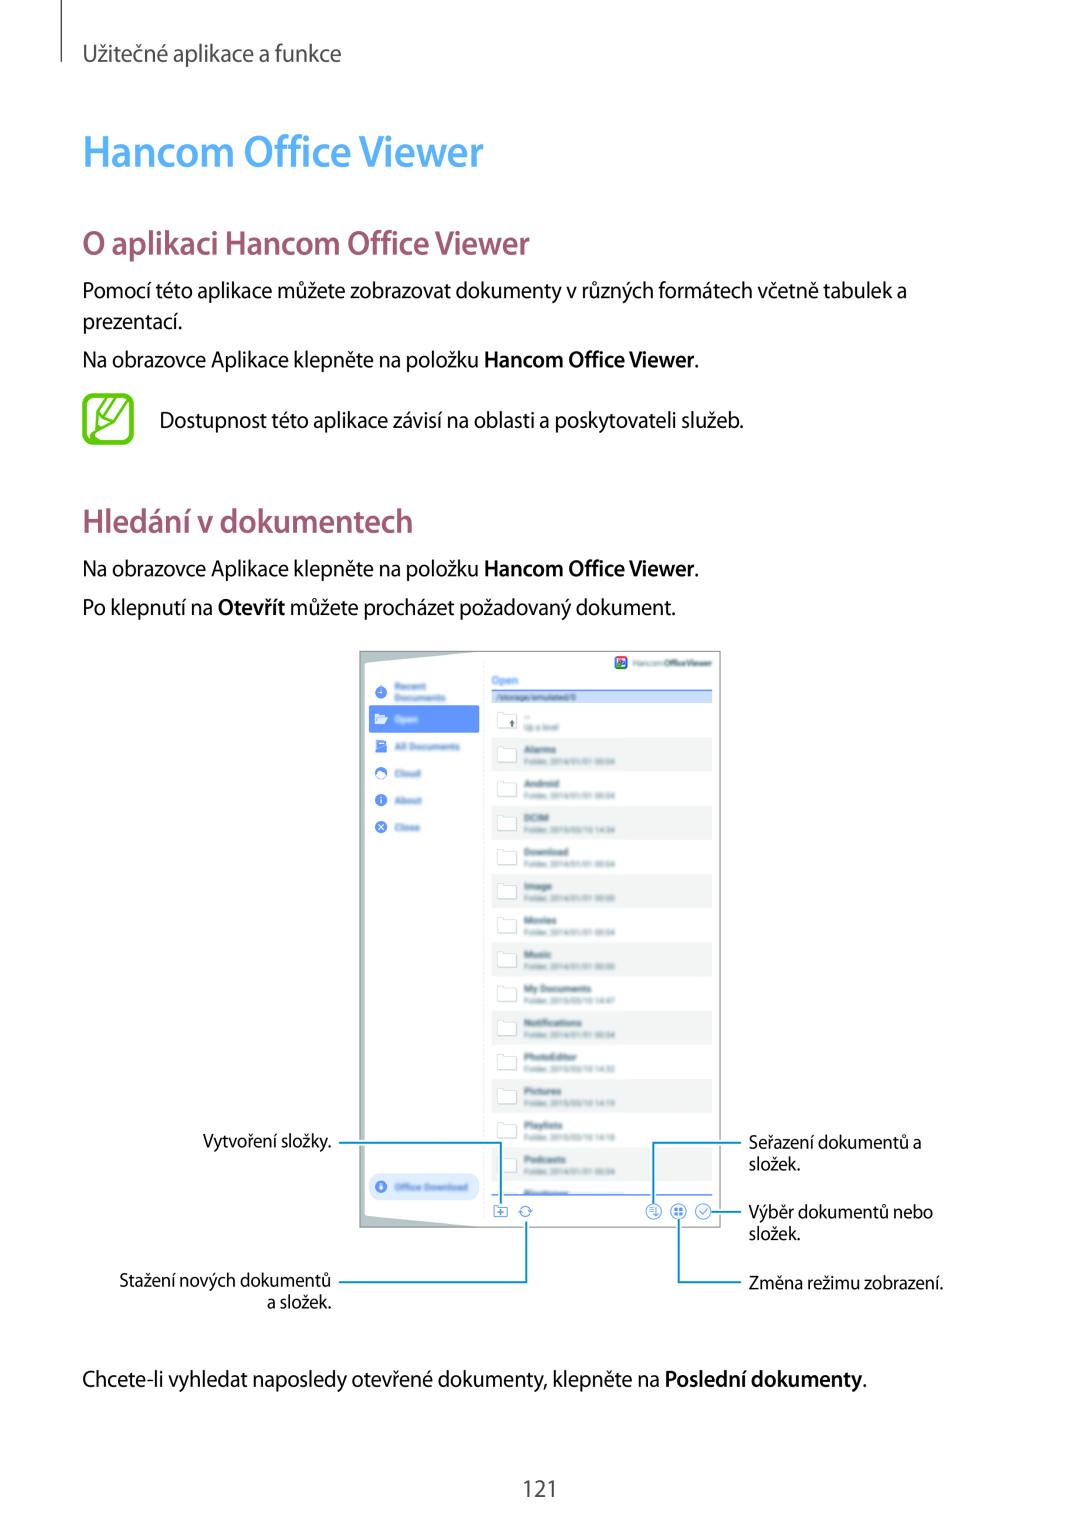 Samsung SM-T700NTSAXSK manual O aplikaci Hancom Office Viewer, Hledání v dokumentech, Užitečné aplikace a funkce 